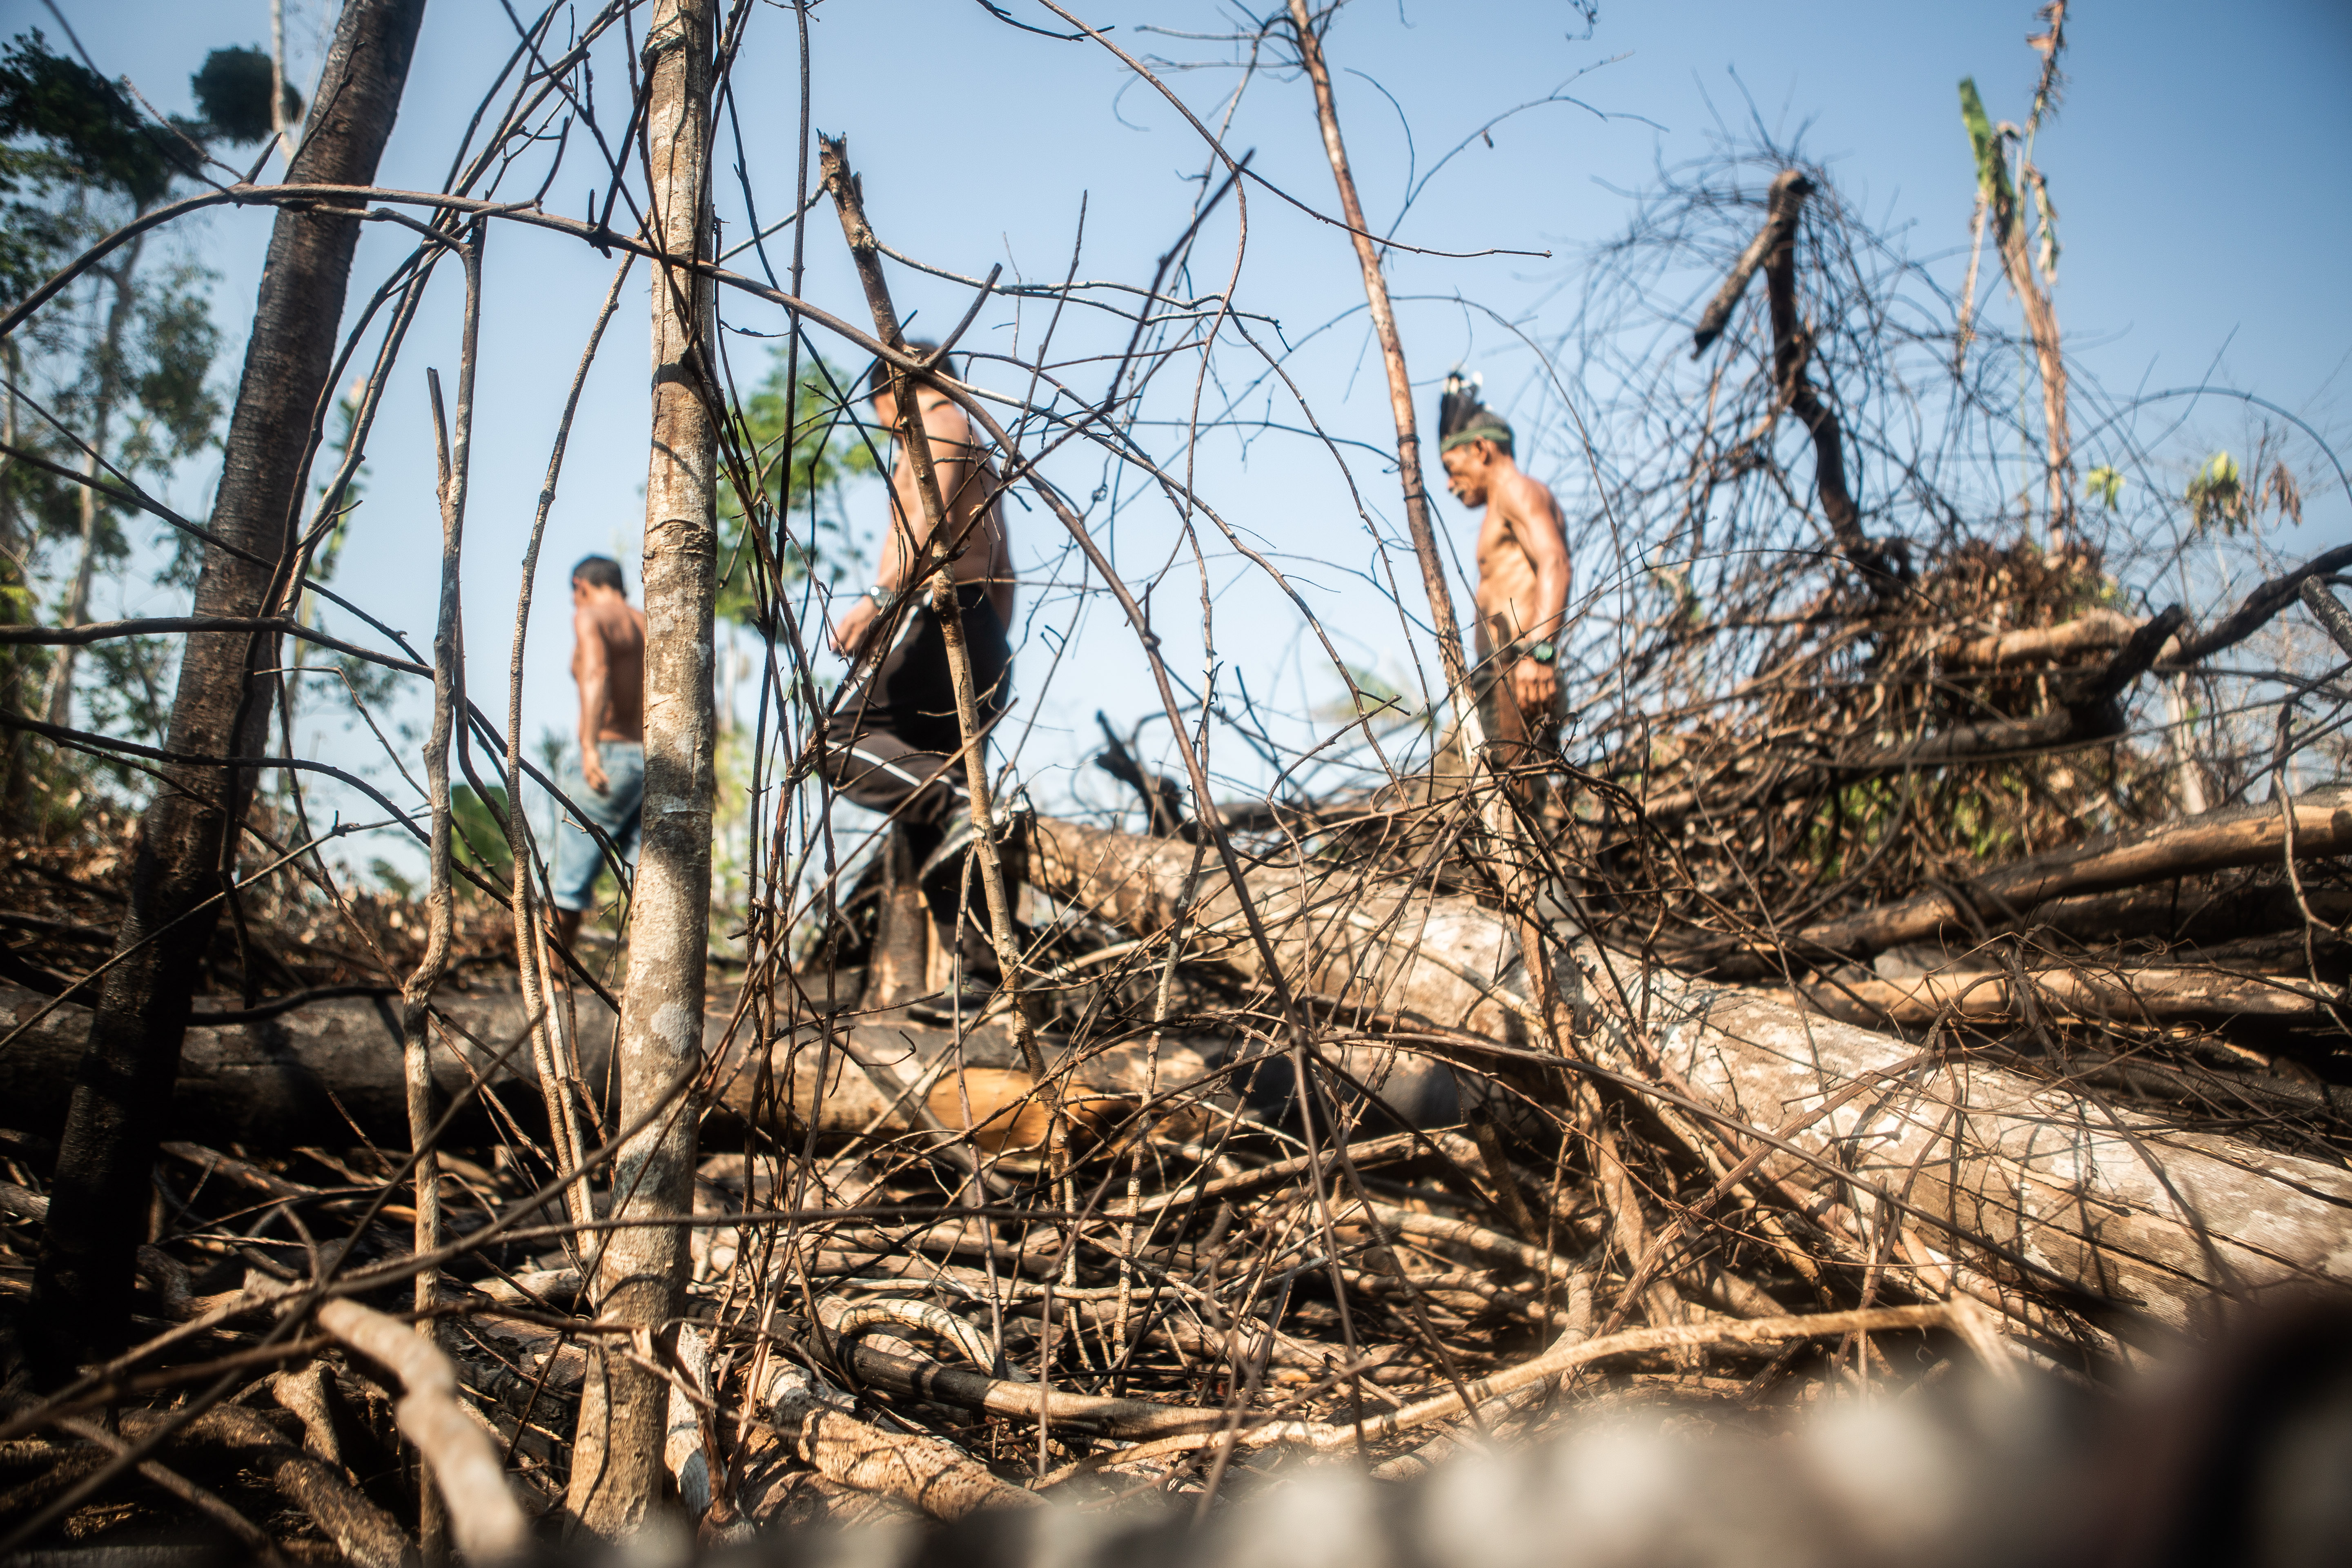 Three indigenous man walking through fallen trees